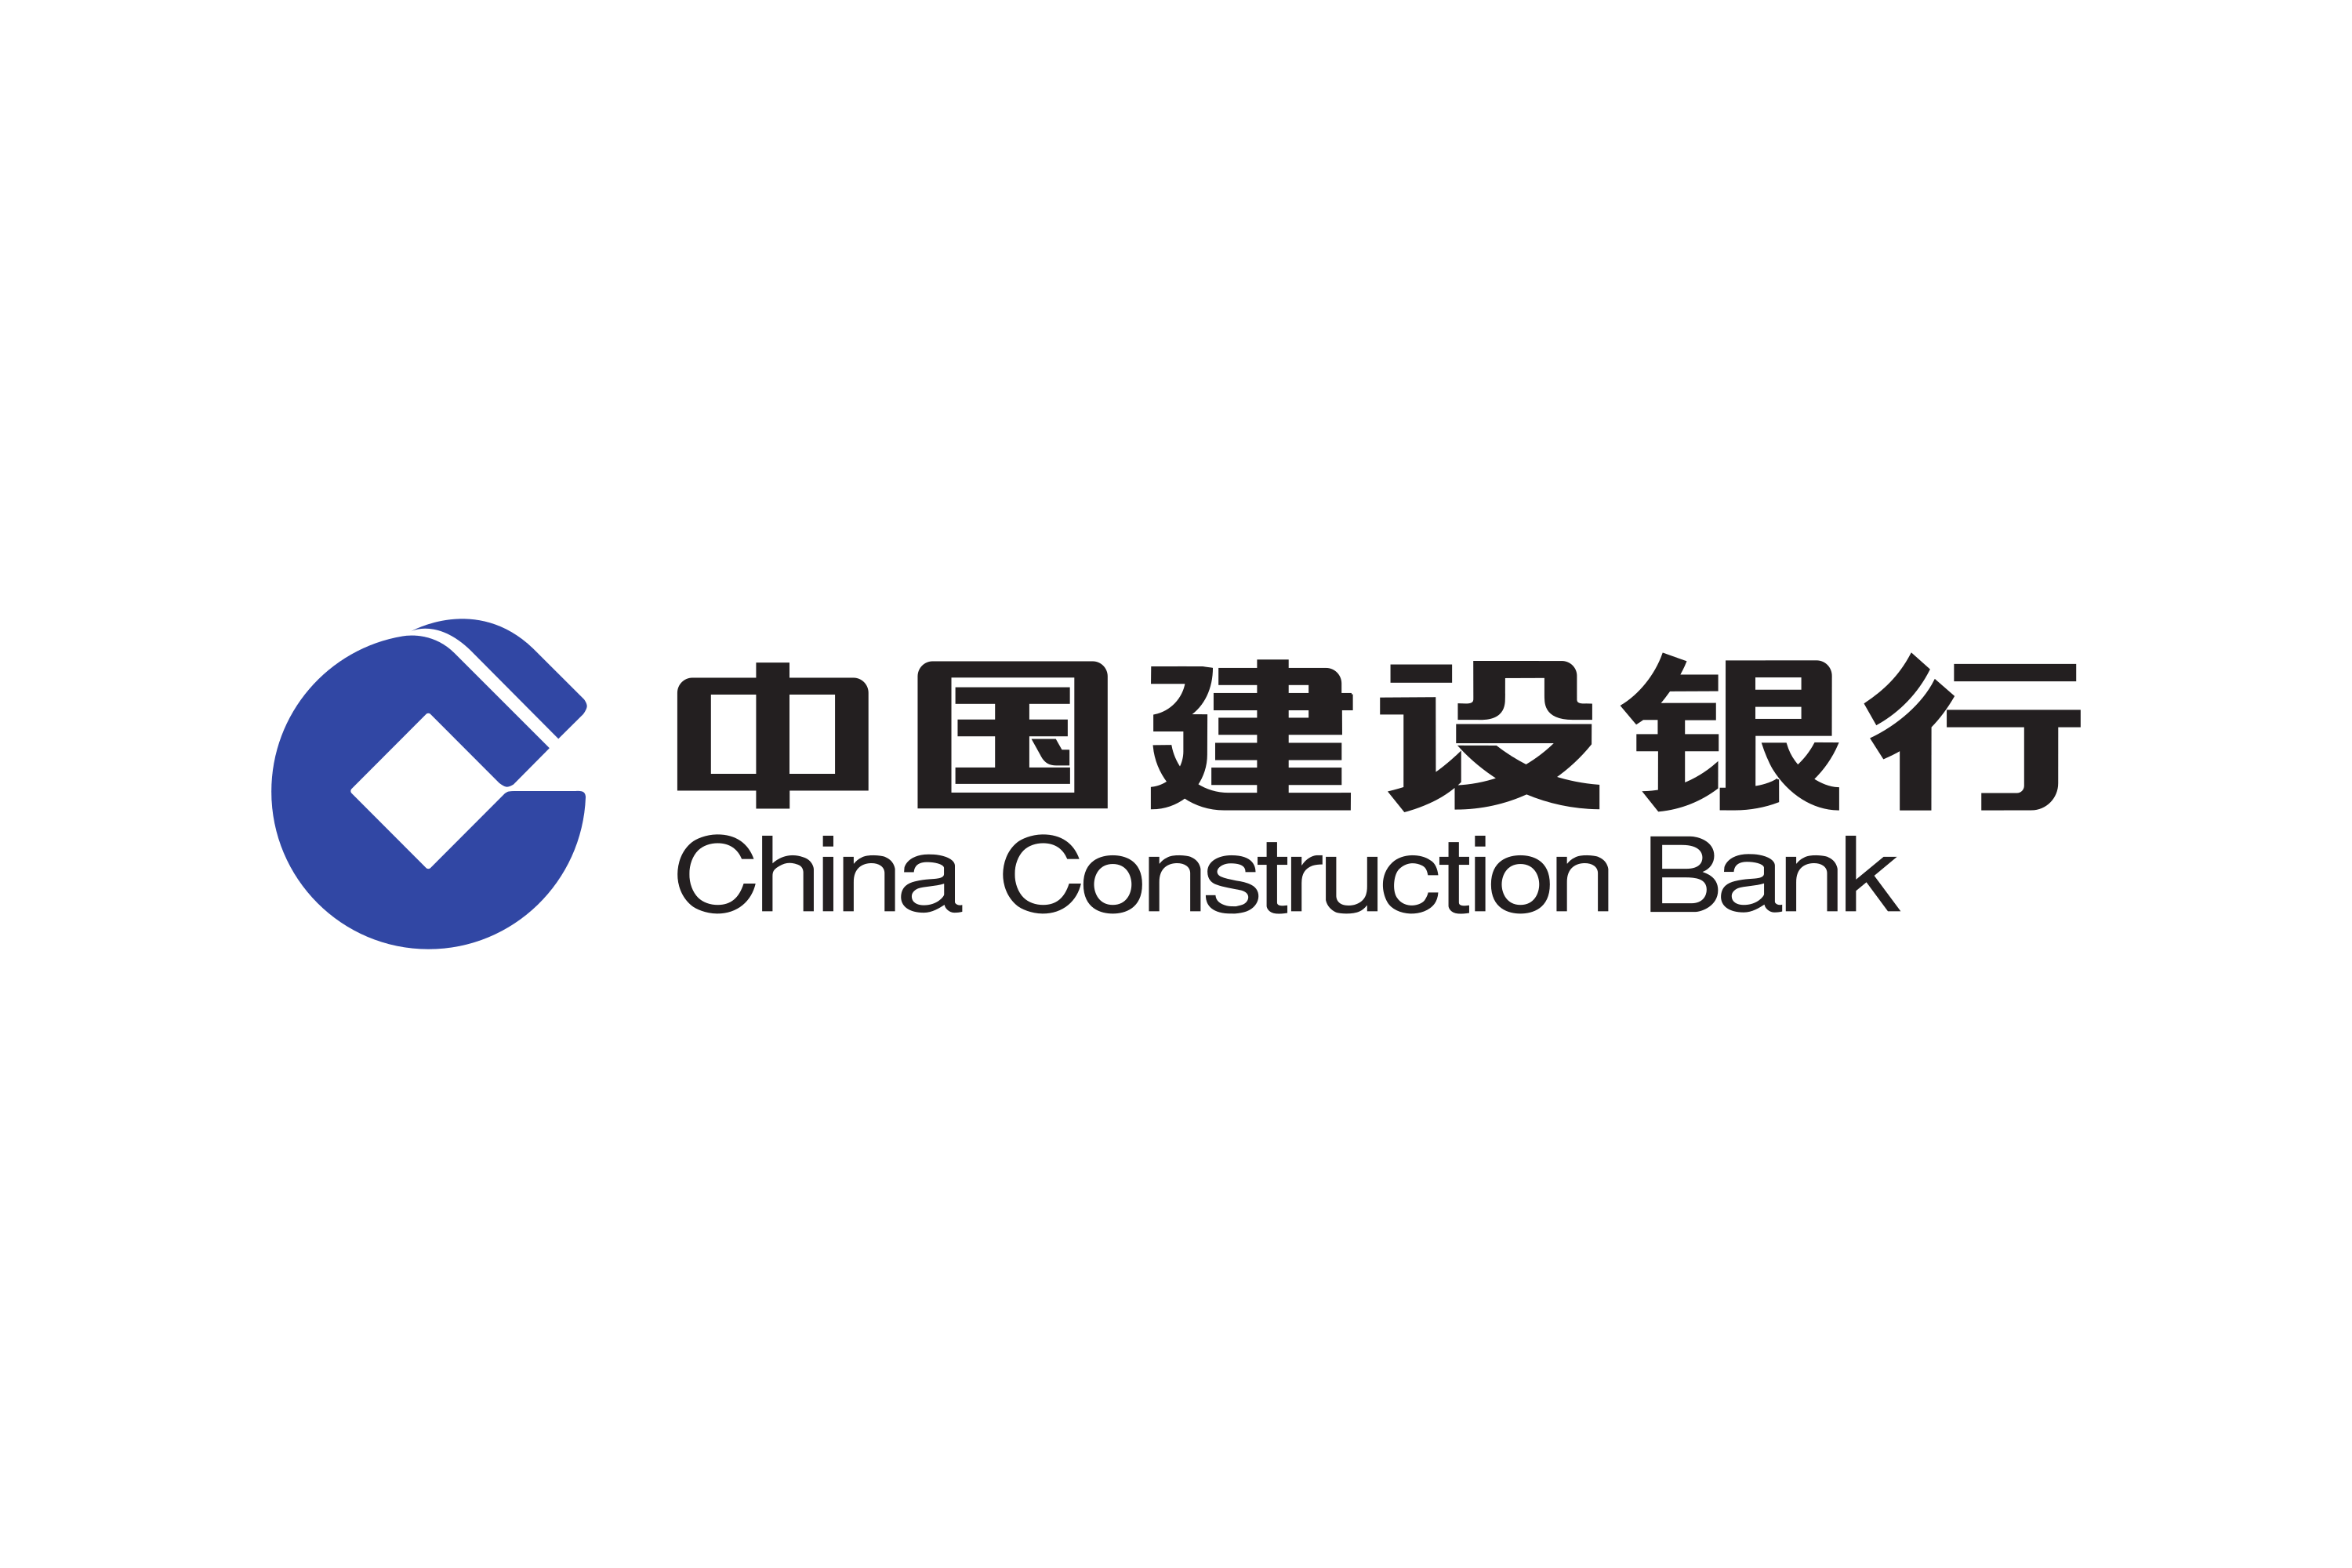 Строительный банк Китая China Construction Bank CCB. China Construction Bank logo. Логотип китайского строительного банка. China Construction Bank (ССВ) ("строительный банк Китая"). Сайт банка китая